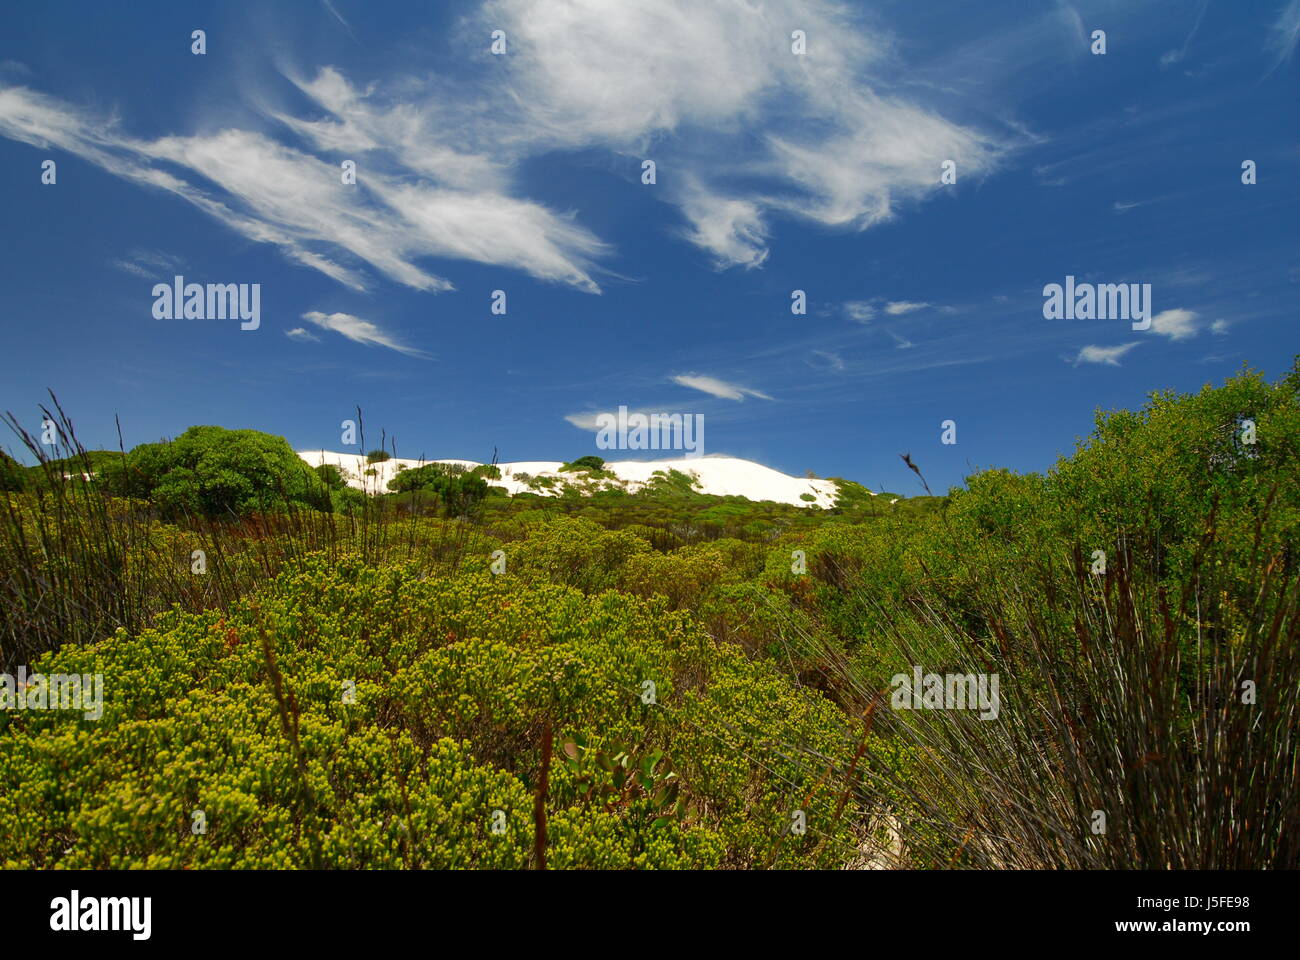 Nationalpark in Südafrika Düne Natur Weisse Dne Blauer Himmel Weisse wolken Stockfoto